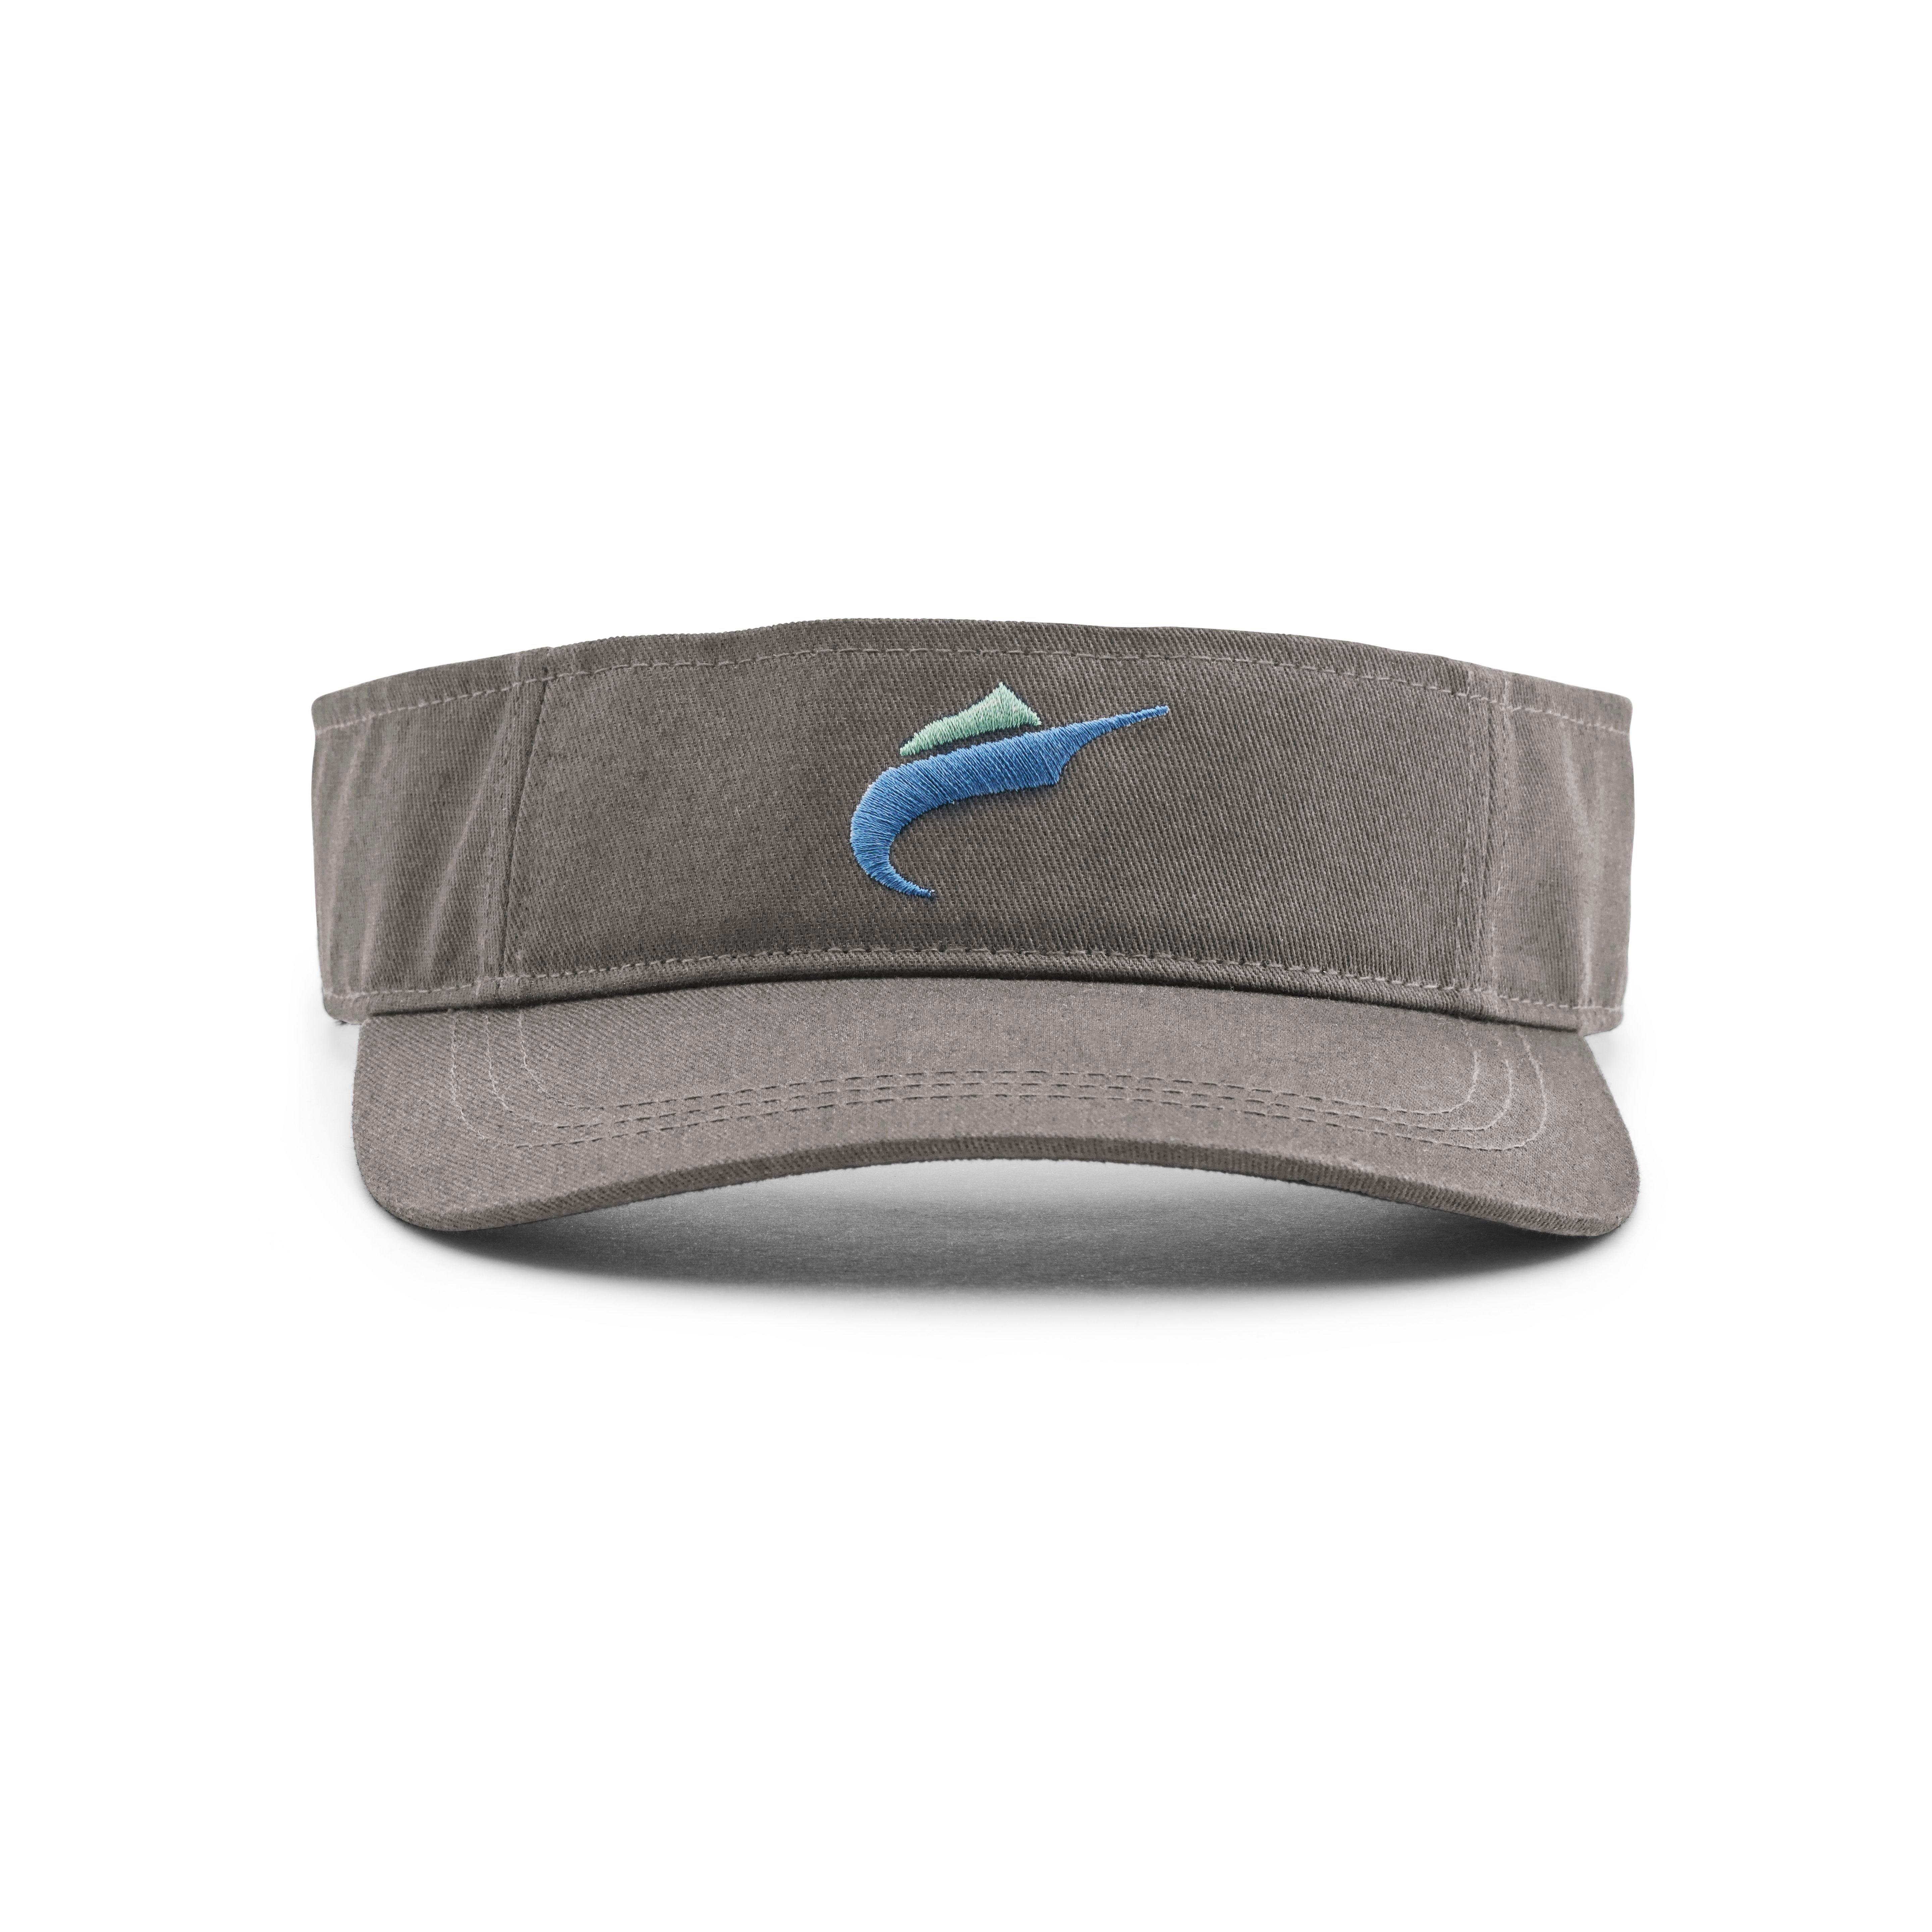 Hats & Headwear – Fin-Nor Fishing